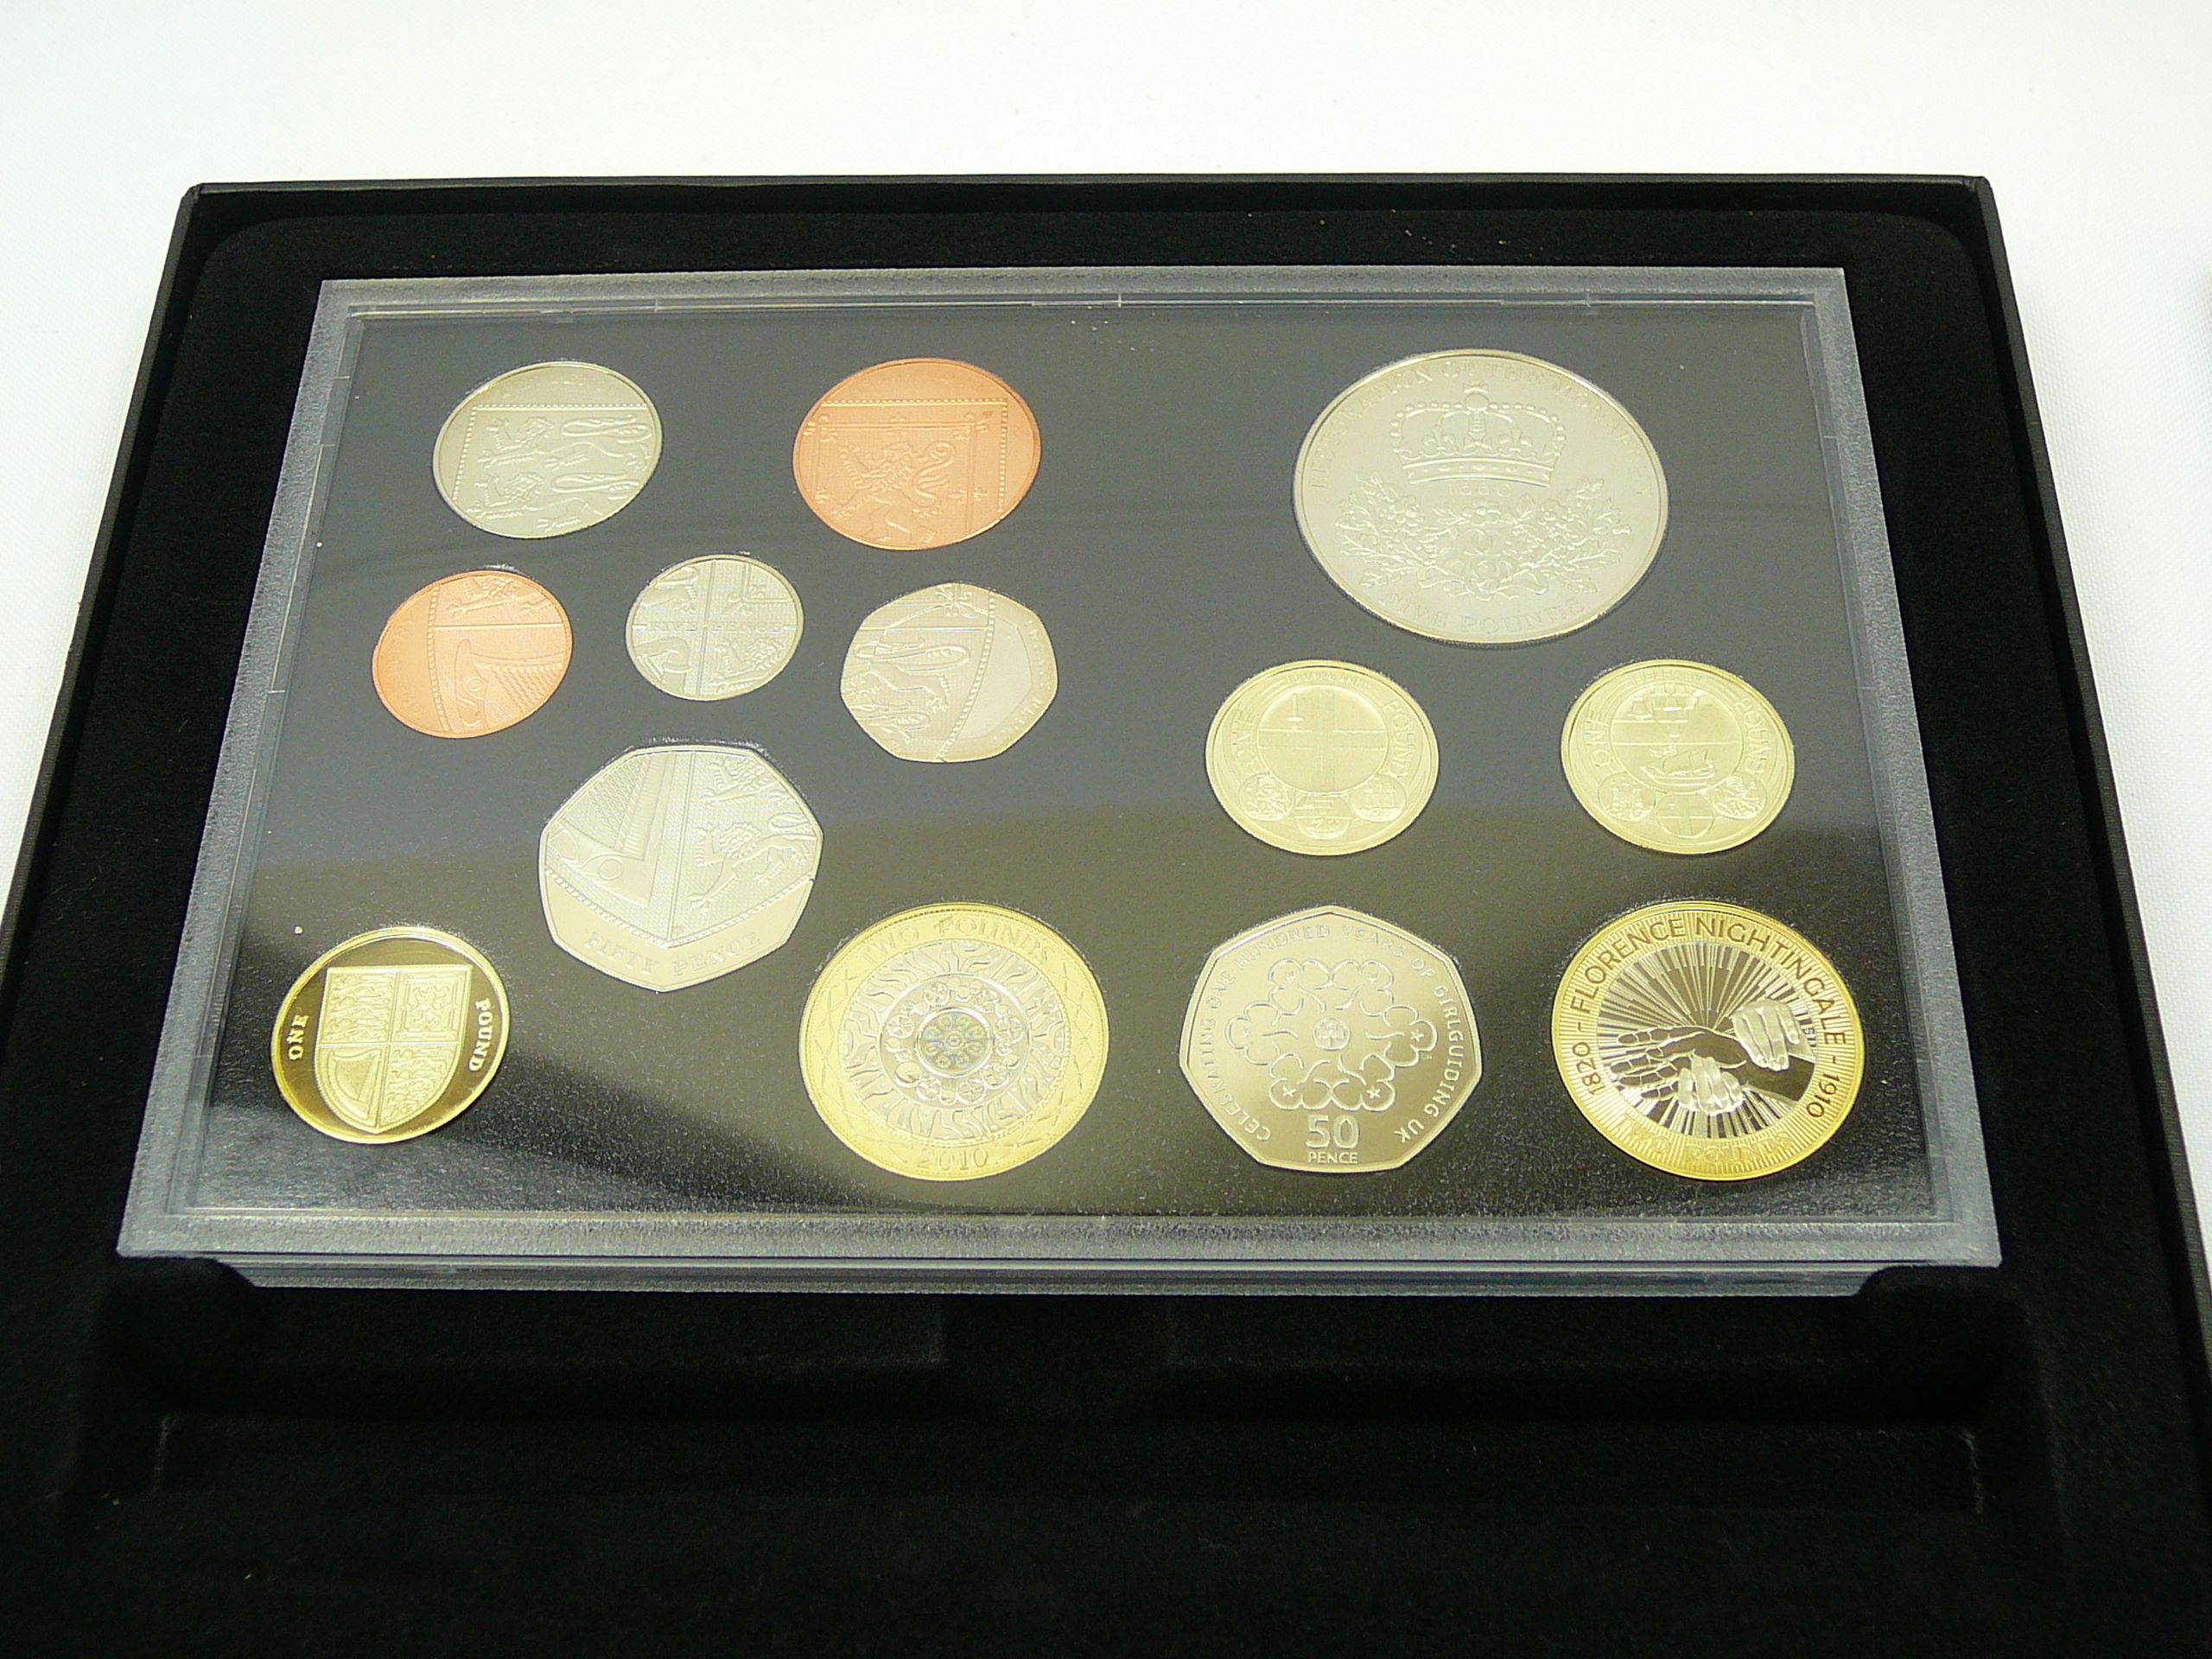 2010 UK coin set